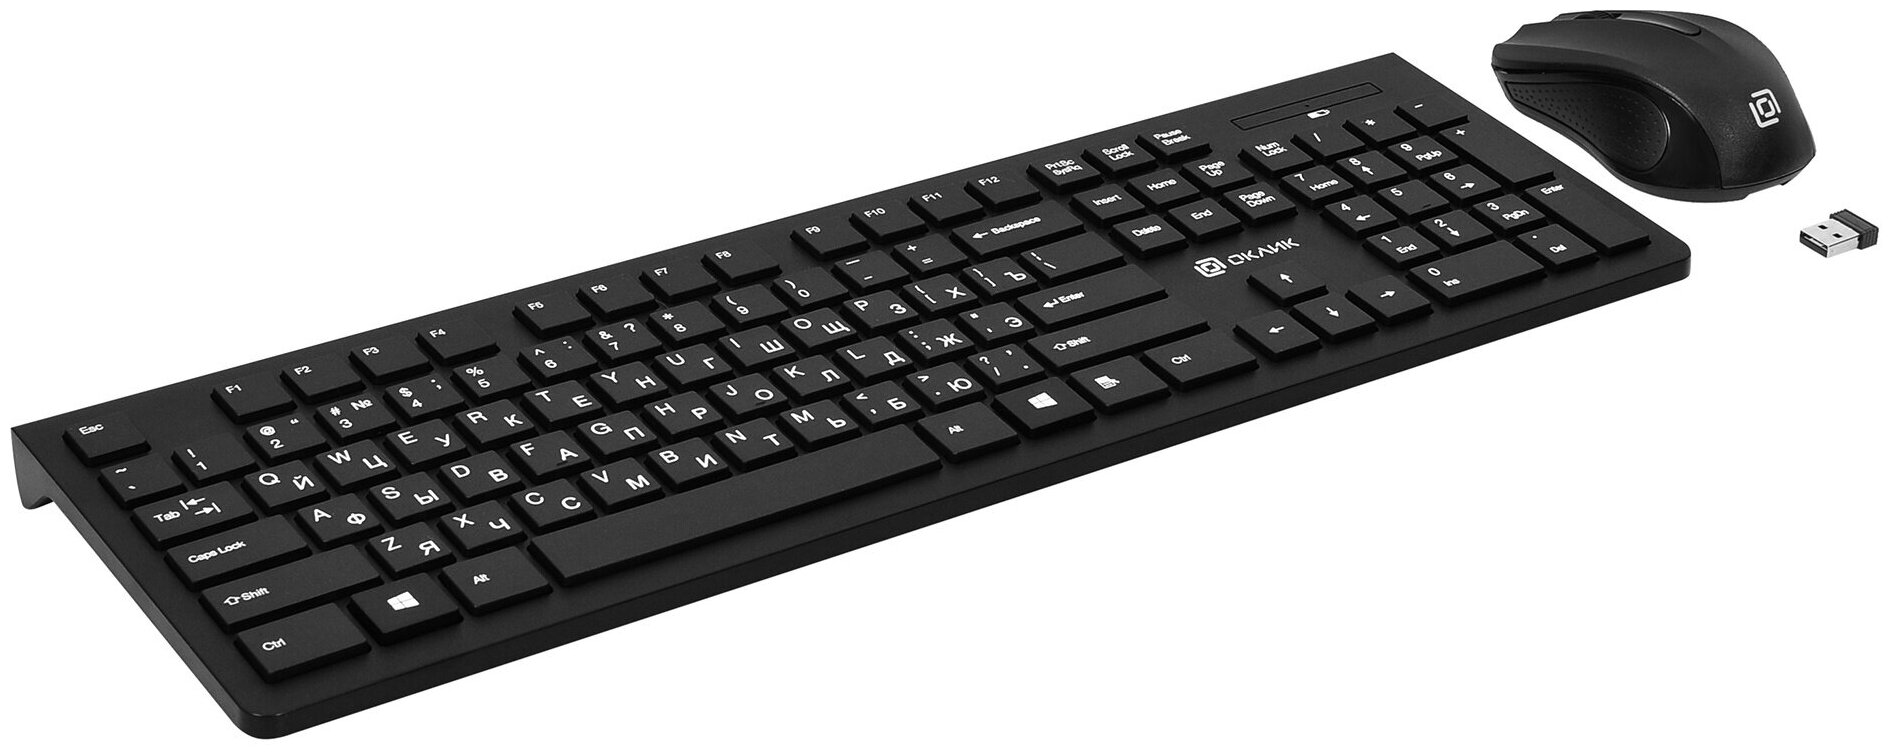 Клавиатура и мышь Oklick Оклик 250M клав:черный мышь:черный USB беспроводная slim